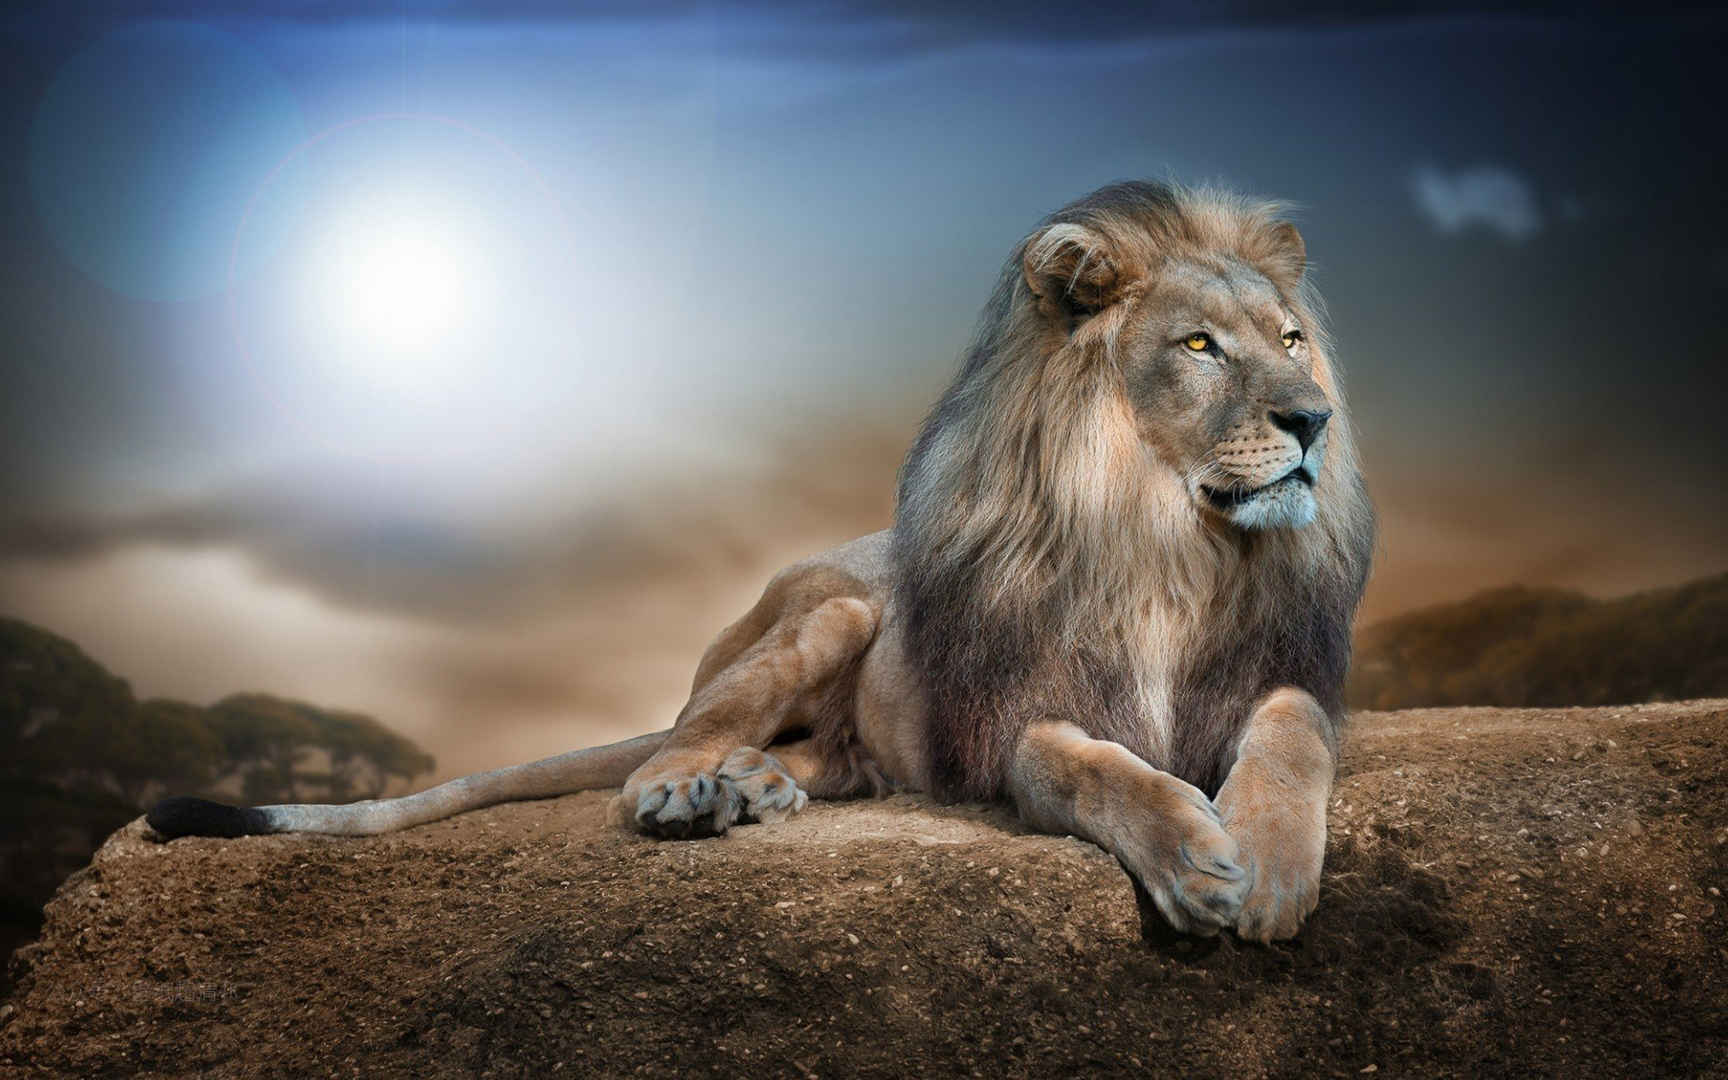 石头上趴着远望的狮子高清壁纸图片